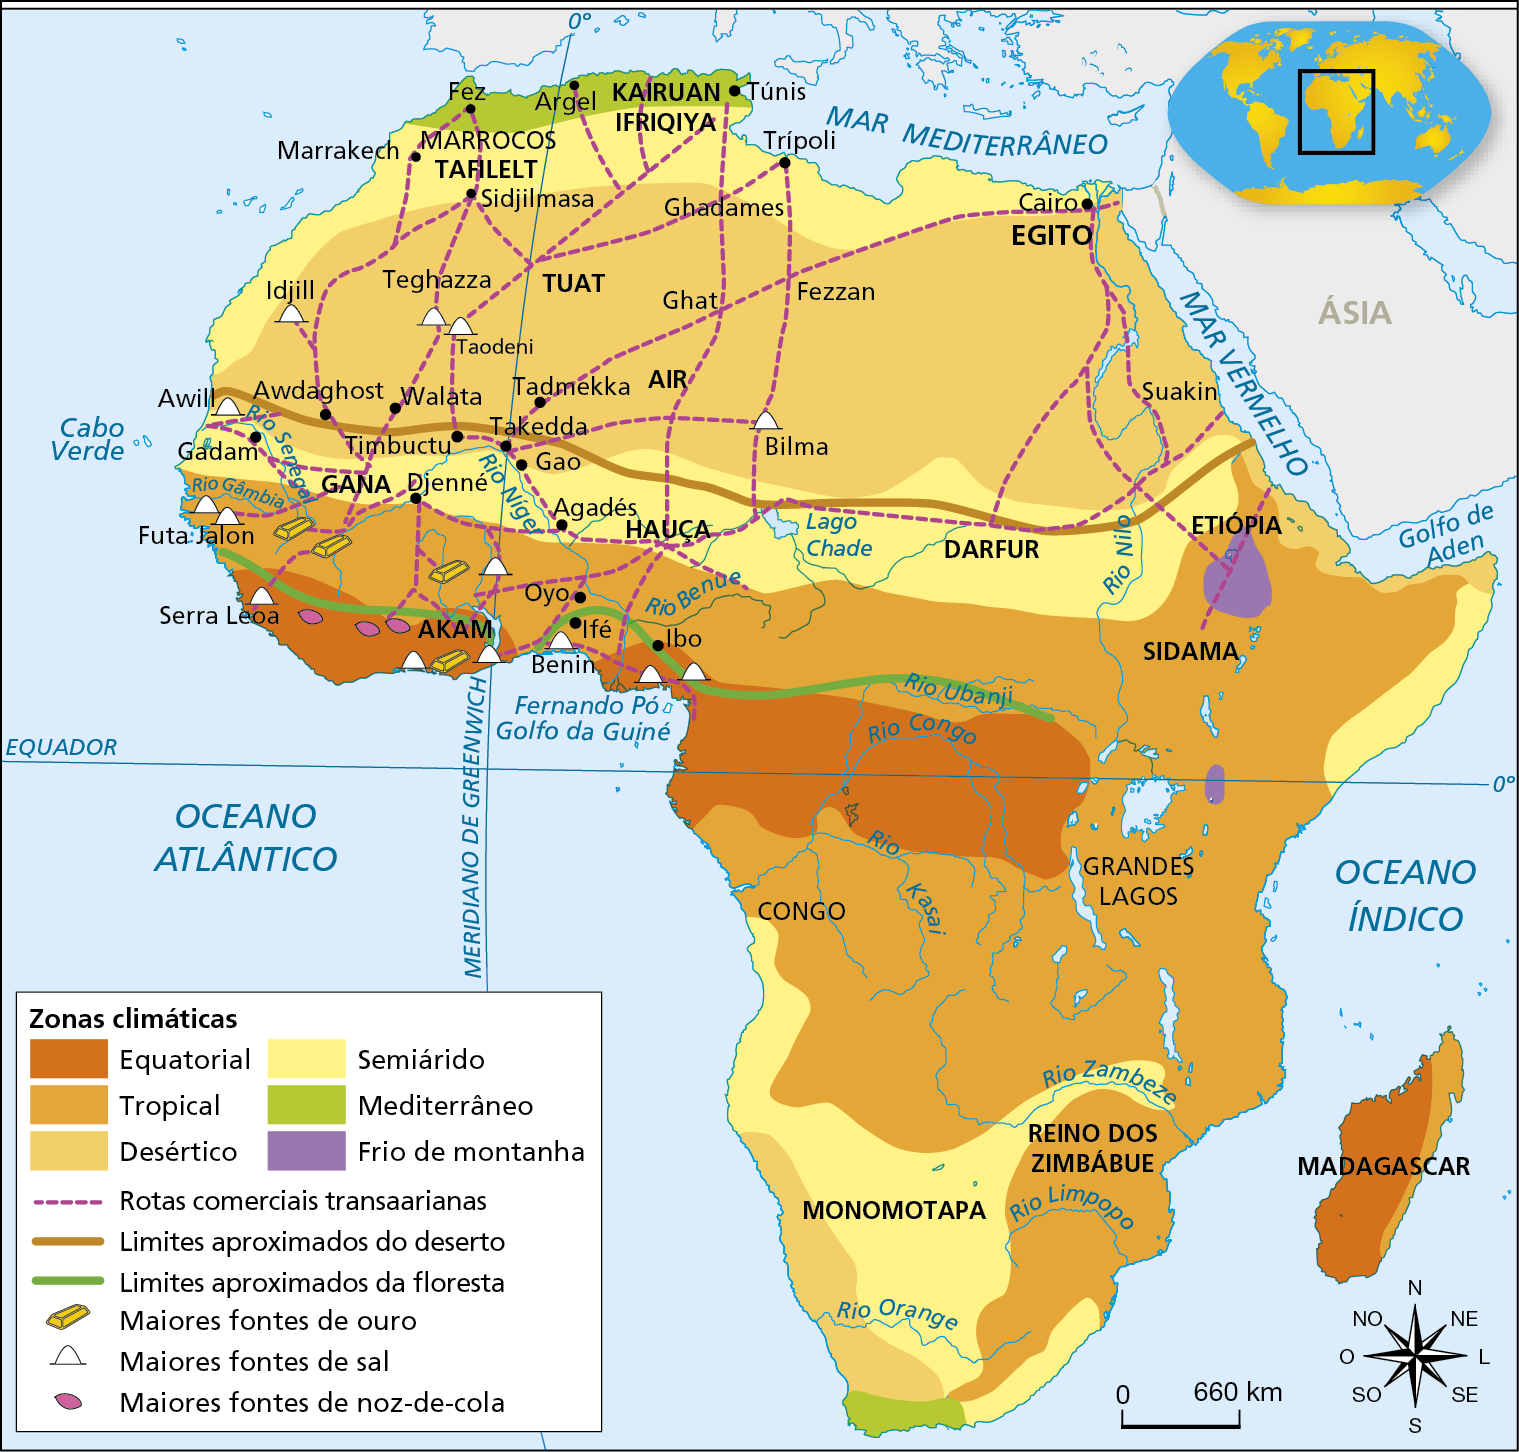 Mapa. As rotas comerciais transaarianas. Século 14. Mapa representando o continente africano. Diferentes áreas estão destacadas por cores distintas e linhas pontilhadas indicam rotas comerciais. Ícones indicam fontes de ouro, sal e noz-de-cola. Em laranja escuro, a 'Zona climática equatorial' abrange parte da costa oeste da África, desde a região de Serra Leoa e do Golfo da Guiné, até a região do Rio Congo atingindo as proximidades dos Grandes Lagos no centro do continente. Estende-se também por grande parte da ilha de Madagascar. Em laranja médio, a 'Zona climática tropical' abrange territórios ao sul e ao norte da linha do Equador, desde a foz do Rio Gâmbia, no oeste da África, até o Chifre da África, no leste do continente, abrangendo as regiões da Etiópia, de Sidama e dos Grandes Lagos, no oeste do continente; do Congo, no leste do continente e do Reino do Zimbábue, no sudeste do continente. A costa leste da Ilha de Madagascar também está nessa zona climática. Em laranja claro, a 'Zona climática desértica' corresponde à região do Deserto do Saara, no norte do continente, desde a região ao norte do Rio Senegal, no oeste, até o litoral do Mar Vermelho, no leste, compreendendo as regiões do Egito e da Etiópia até o Golfo de Aden. Outra área desértica está situada no sudoeste do continente, na região que hoje corresponde à Namíbia e ao norte da África do Sul, na costa banhada pelo Oceano Atlântico, nas proximidades do Rio Orange. Destacado em amarelo claro, o 'Semiárido' africano abrange a região de Monomotapa e o sul da África, estendendo-se desde o litoral do Golfo de Benguela, no oeste africano, ao reino do Zimbábue, às margens do rio Zambeze, no leste. O semiárido também compreende a região do Sahel, desde a região que hoje compreende o Senegal, no oeste africano, até a Etiópia, no leste, estendendo-se pelas regiões de Gana, Hauçá, Darfur e Etiópia.  No norte da África, também há zonas climáticas de Semiárido, desde o litoral do território que hoje compreende a Mauritânia, no noroeste, até a foz do Rio Nilo, no norte do continente. Destacada em verde, a 'Zona climática do mediterrâneo' abrange uma pequena parte do litoral norte do continente, na região que hoje compreende o Marrocos, a Argélia e a Tunísia e, no sul do continente, o litoral sul da África do Sul. As pequenas zonas destacadas em lilás, que correspondem ao 'Frio de montanha', estão localizadas na região que hoje compreende a Etiópia e o Quênia; e a leste do Lago Vitória, no território que hoje compreende o Quênia e o norte da Tanzânia. Destacadas em linhas pontilhadas cor de rosa, as rotas comerciais transaarianas conectam as regiões do Sahel e do Mediterrâneo, cortando o Deserto do Saara e estendendo-se desde as cidades da zona climática Equatorial, como Ibo, Até a zona climática mediterrânea, atingindo as cidades de Fez, Argel e Túnis. Interligando, no oeste, as regiões de Gana, Akam e Hauçá, ao sul do deserto, com Tafilelt, Ifriqiya e Kairuan, ao norte do deserto; e, no leste, as regiões de Darfur, Etiópia e Sidama, ao sul do deserto, ao Egito, no norte. Nas rotas, são destacadas as cidades: de Gadam, Awdaghost, Walata, Timbuctu, Djenné, Tadmekka, Takedda, Gao, Agadés, Oyo, Ifé e Ibo; Sidjilmasa, Marrakech, Fez, Argel, Túnis, Trípoli e Cairo.  Destacado por uma linha marrom, os 'limites aproximados do Deserto do Saara' estendem-se do oeste africano, ao norte do Rio Senegal, até o leste do continente, na região que hoje compreende a Eritreia e o Sudão.  Destacados por uma linha verde, os 'limites aproximados da floresta' estão situados na divisa dos climas equatorial e tropical, iniciando-se na costa atlântica, nas proximidades de Futa Jalon e estendendo-se até o centro do continente, nas margens do Rio Ubanji, ao norte do Rio Congo, na região que hoje compreende a República Centro Africana e a República Democrática do Congo. Indicadas por ícones representando barras douradas, as maiores fontes de ouro estão situadas na região tropical, entre Futa Jalon e Oyo, ao sul de Djenné, e na região que hoje corresponde ao litoral da Costa do Marfim, ao sul de Akam. Indicadas por ícones representando triângulos brancos, as maiores fontes de sal abrangem, no oeste do continente, a região de Serra Leoa, Futa Jalon, Awill, Idjill, Teghazza e Taodeni; a região do Golfo do Benim, com destaque para as cidades de Oyo e Ifé; a região do Golfo da Guiné, com destaque para a cidade de Ibo, além de Bilma, ao norte do Lago Chade, no sul do Deserto do Saara. Indicadas por ícones representando formas ovais cor de rosa, as maiores fontes de noz-de-cola estão nos territórios entre Serra Leoa e Akam, na região que hoje compreende parte da Guiné, a Costa do Marfim e Gana. No canto inferior direito, rosa dos ventos e escala de 0 a 660 quilômetros.